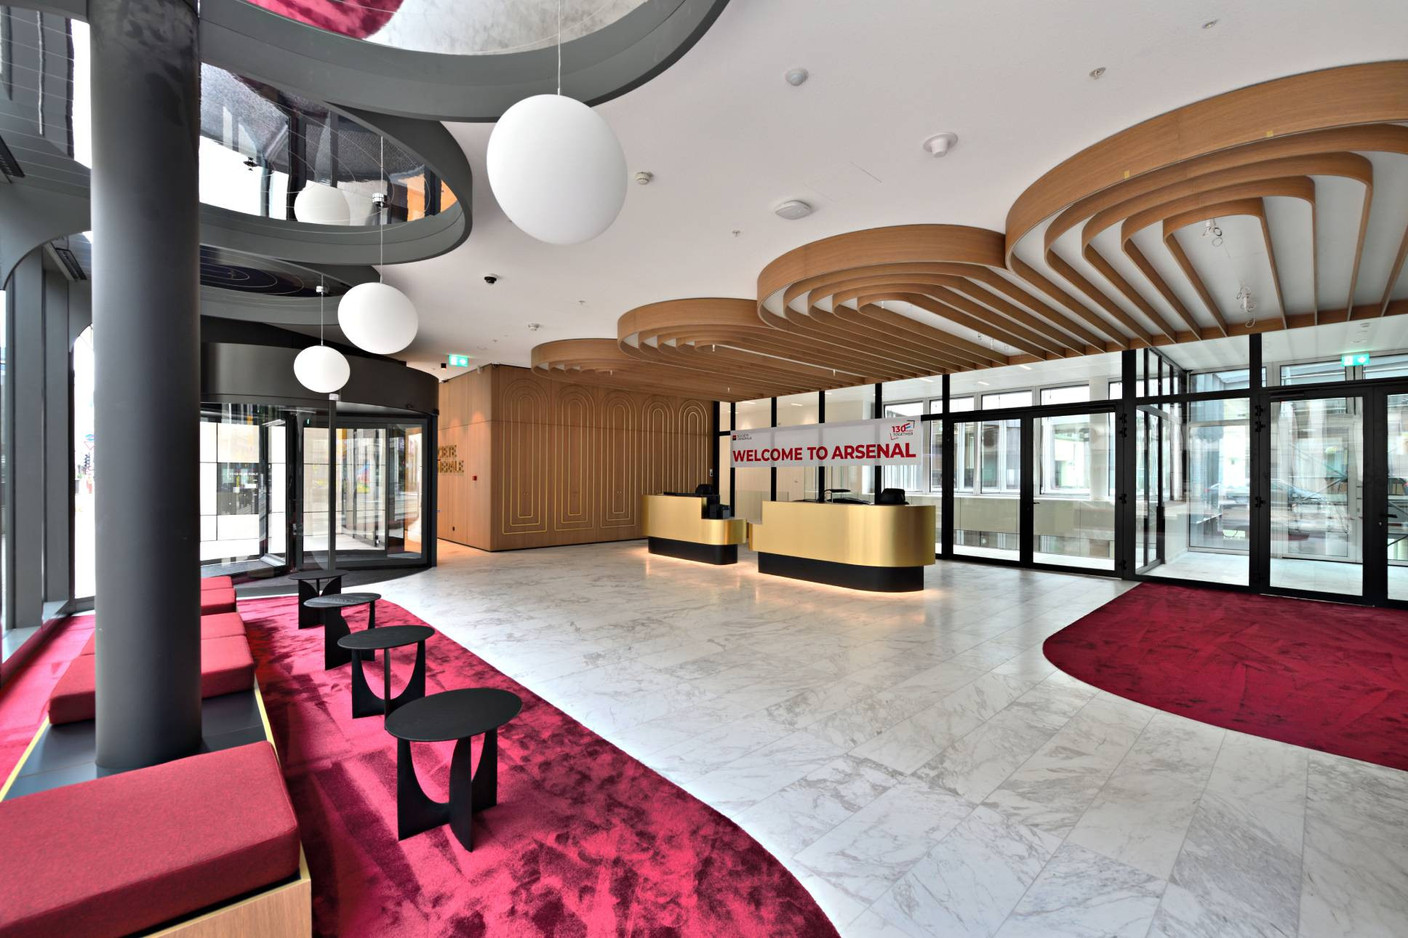 L’aménagement du lobby rappelle les codes utilisés pour la décoration des salons clients du bâtiment Carrefour. (Photo: Gérard Borre)